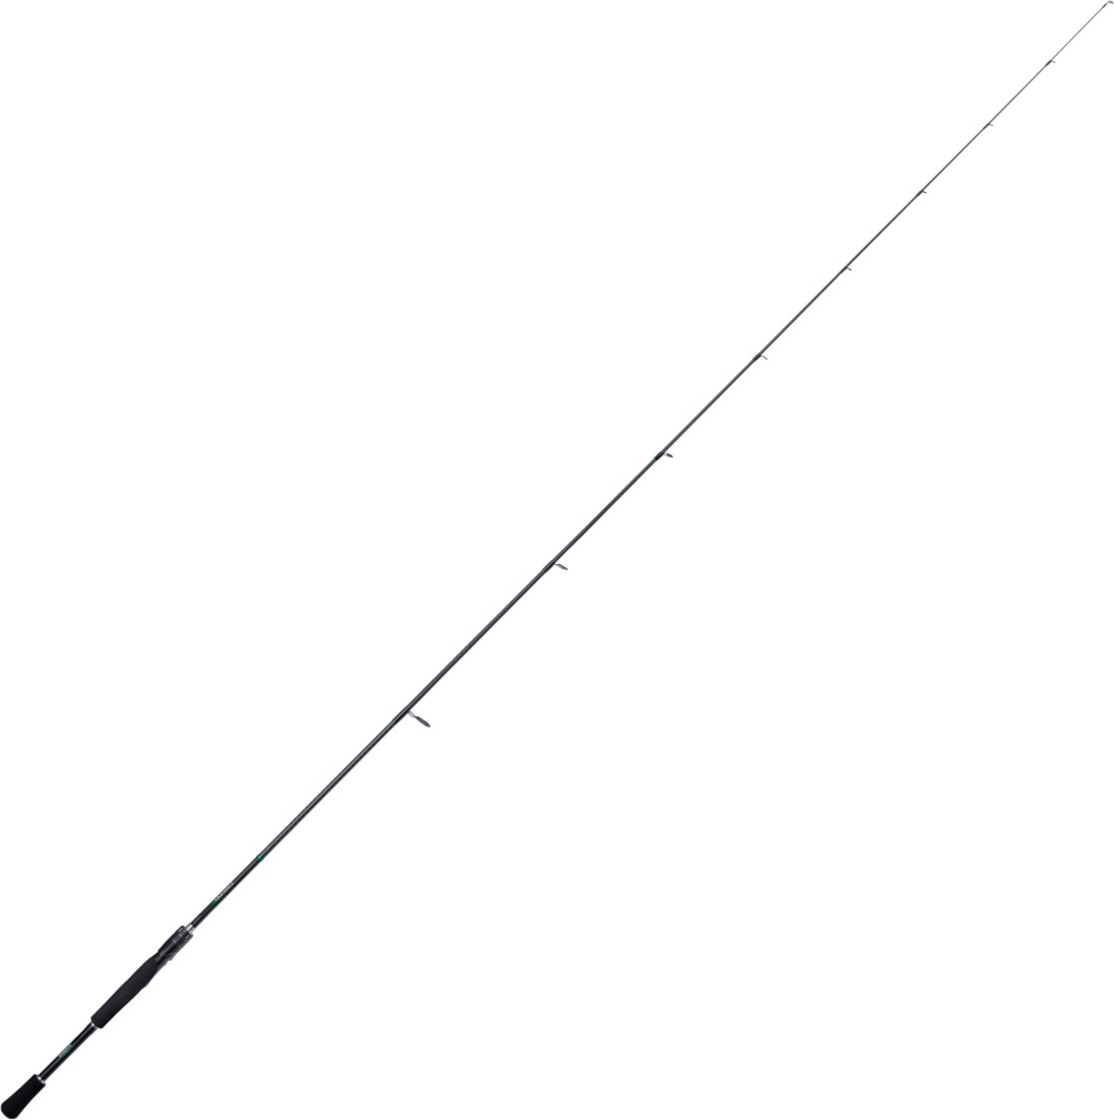 Shimano Curado Spinning Rod, Spinning Rods, Spinning Rods, Spin Fishing